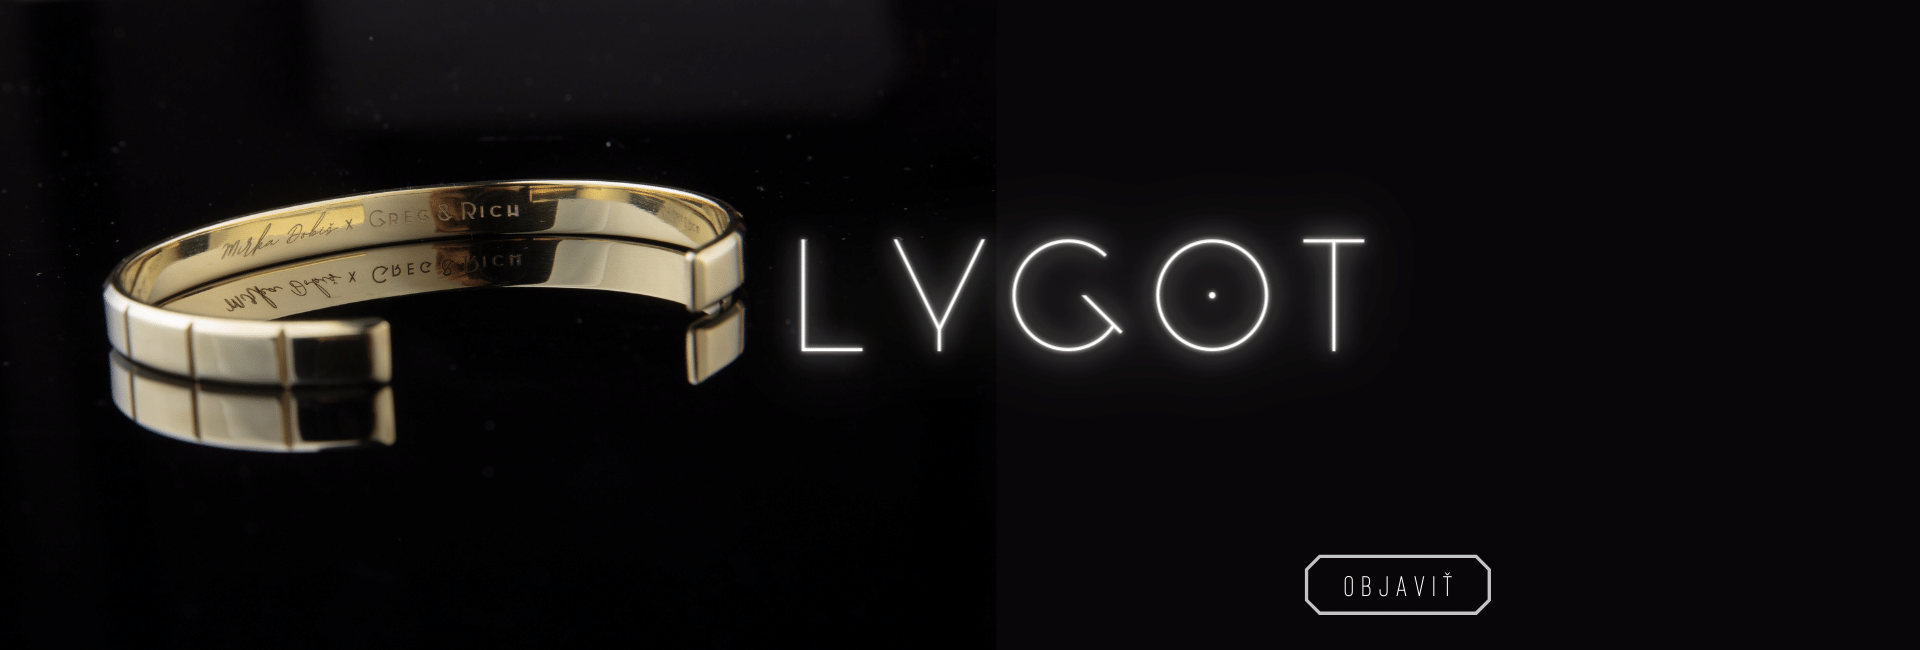 LYGOT - slide 2